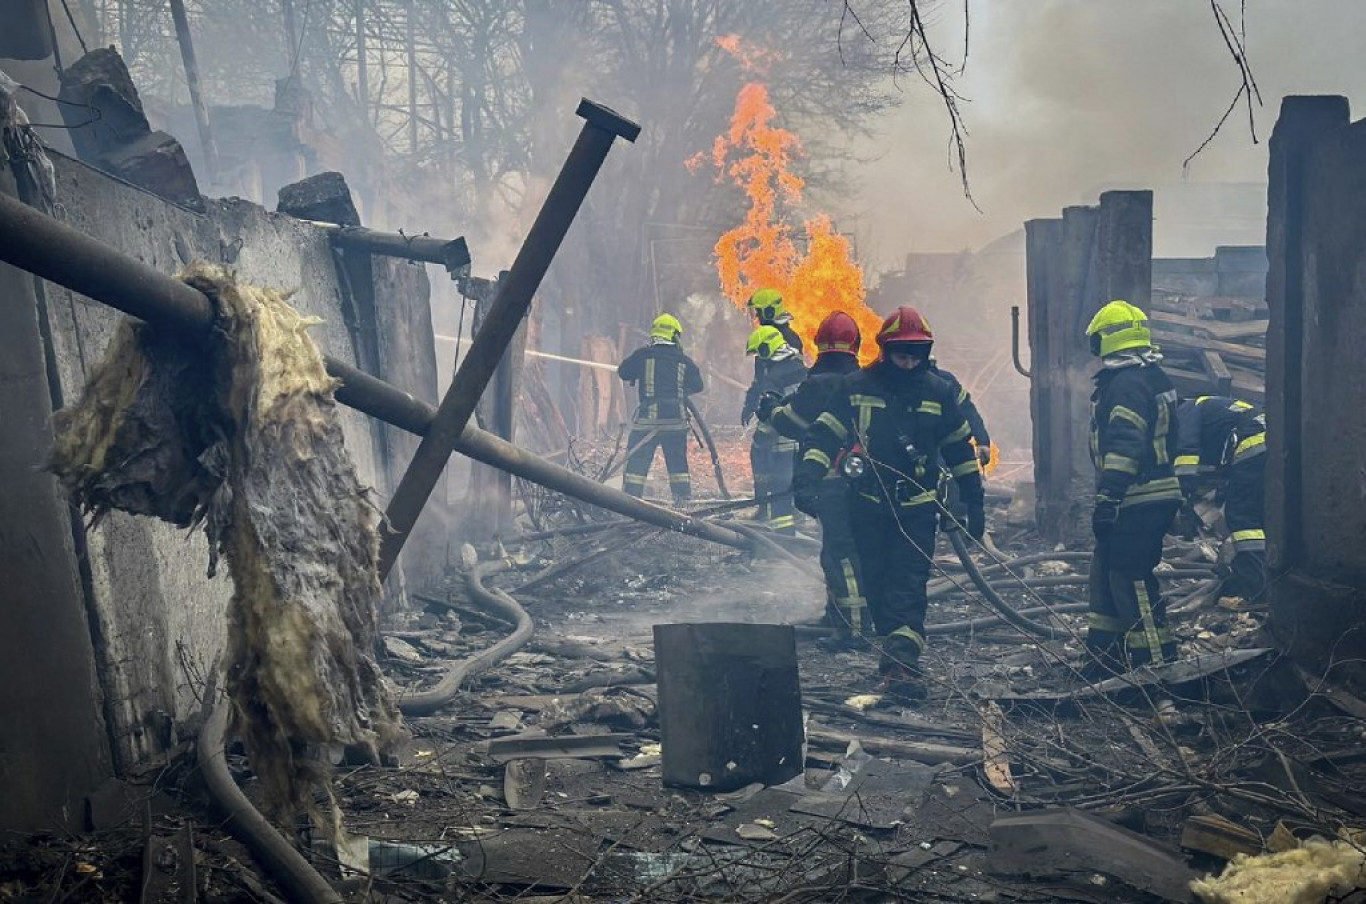 Nagy erőkkel támadták éjjel az ukrán kritikus infrastruktúrát az oroszok, Lengyelországban riadóztatták a légierőt